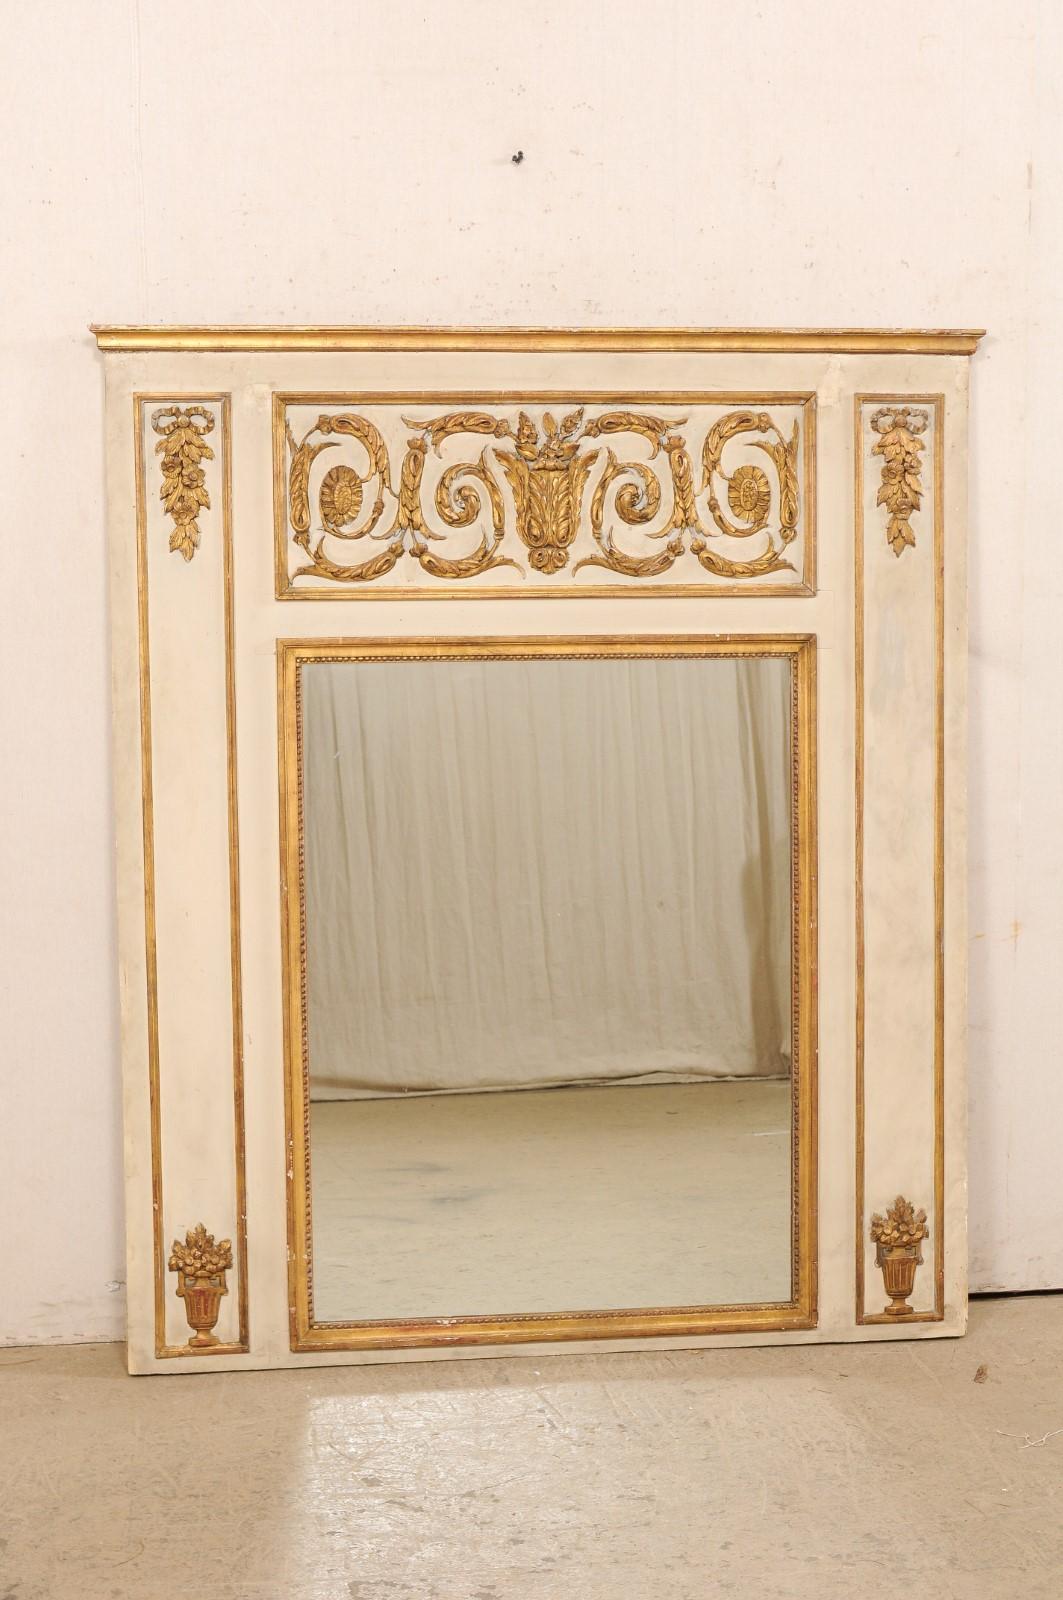 Miroir néoclassique français de grande taille du XIXe siècle. Ce miroir ancien de France est magnifiquement orné d'éléments sculptés traditionnels néoclassiques, notamment des feuillages en volutes, des guirlandes suspendues surmontées d'un nœud